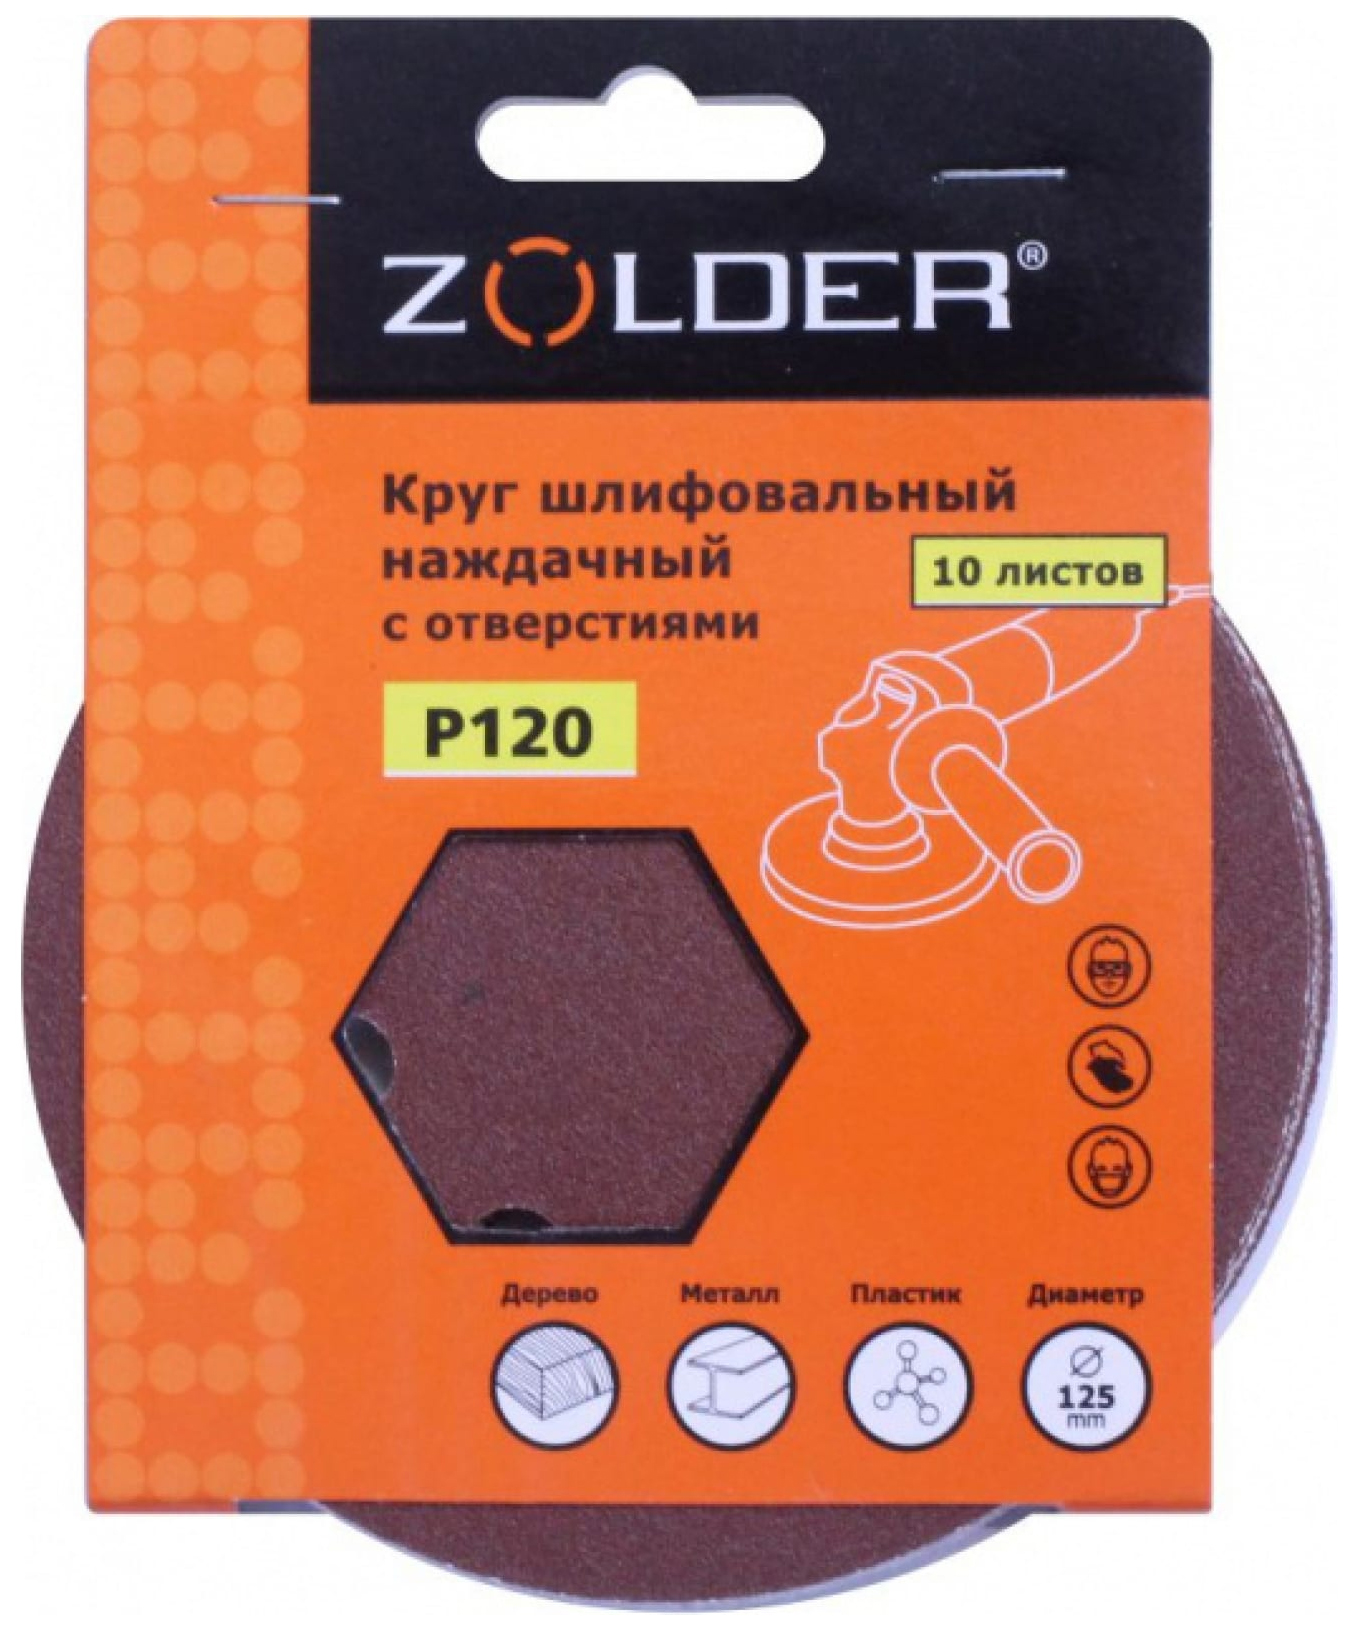 ZOLDER Круги шлифовальные наждачные 10шт, P120, 125 мм / Z-108-120 наждачные круги шлифовальные zolder